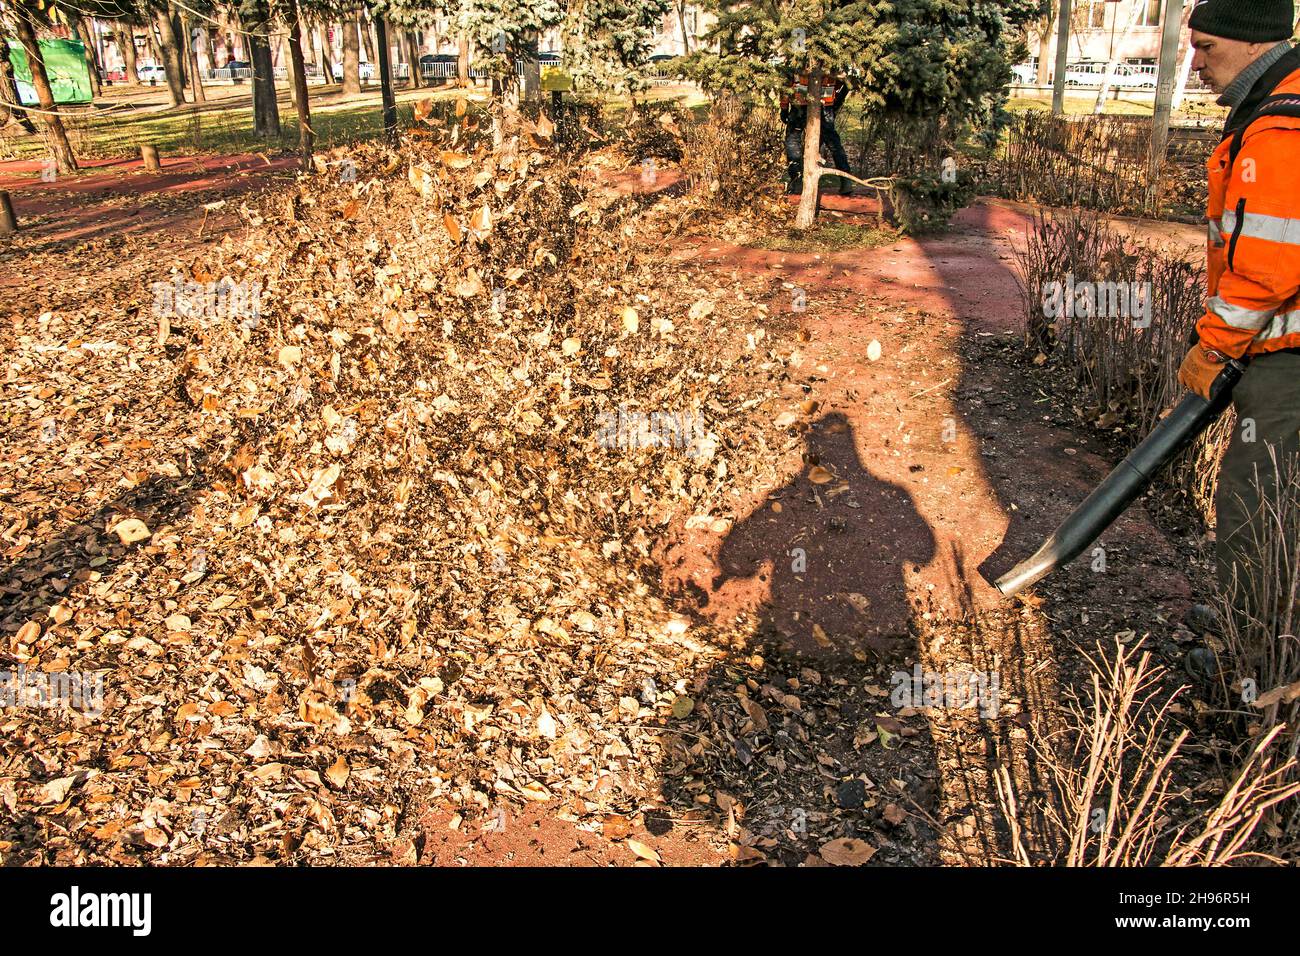 Dnepropetrovsk, Ucraina - 11.25.2021: Pulizia di foglie secche con un mulino a vento. Un lavoratore municipale pulisce il parco cittadino. Preparazione dei parchi cittadini per l'inverno Foto Stock